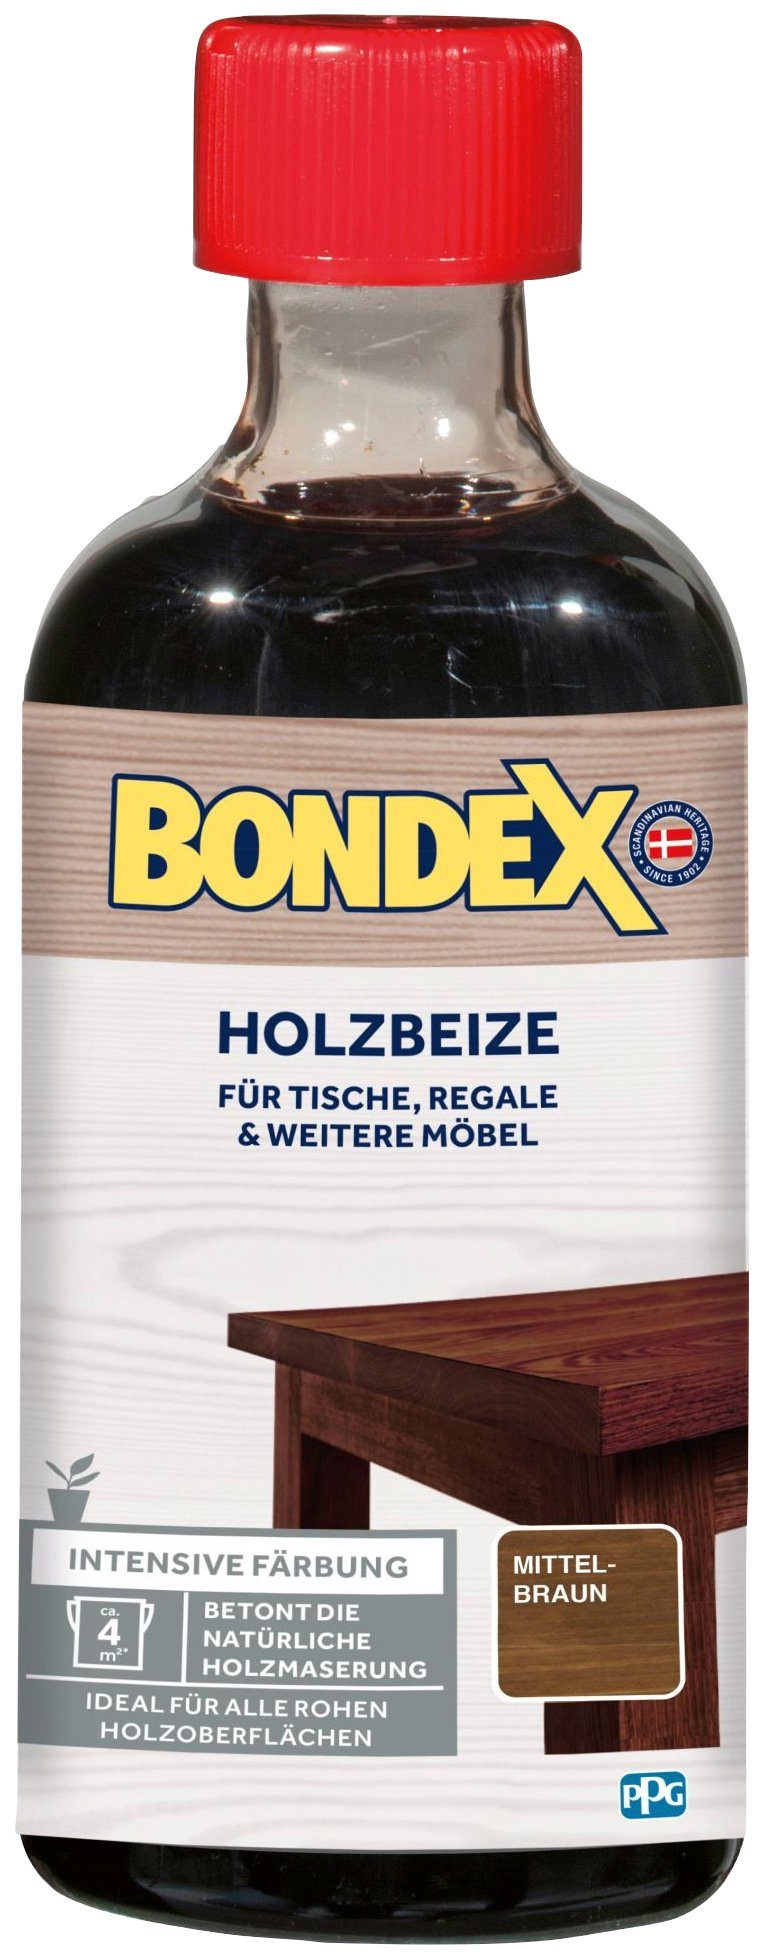 Bondex Lasur Mittelbraun 0,25 & l HOLZBEIZE, intensive für Regale weitere Tische, Möbel, Färbung